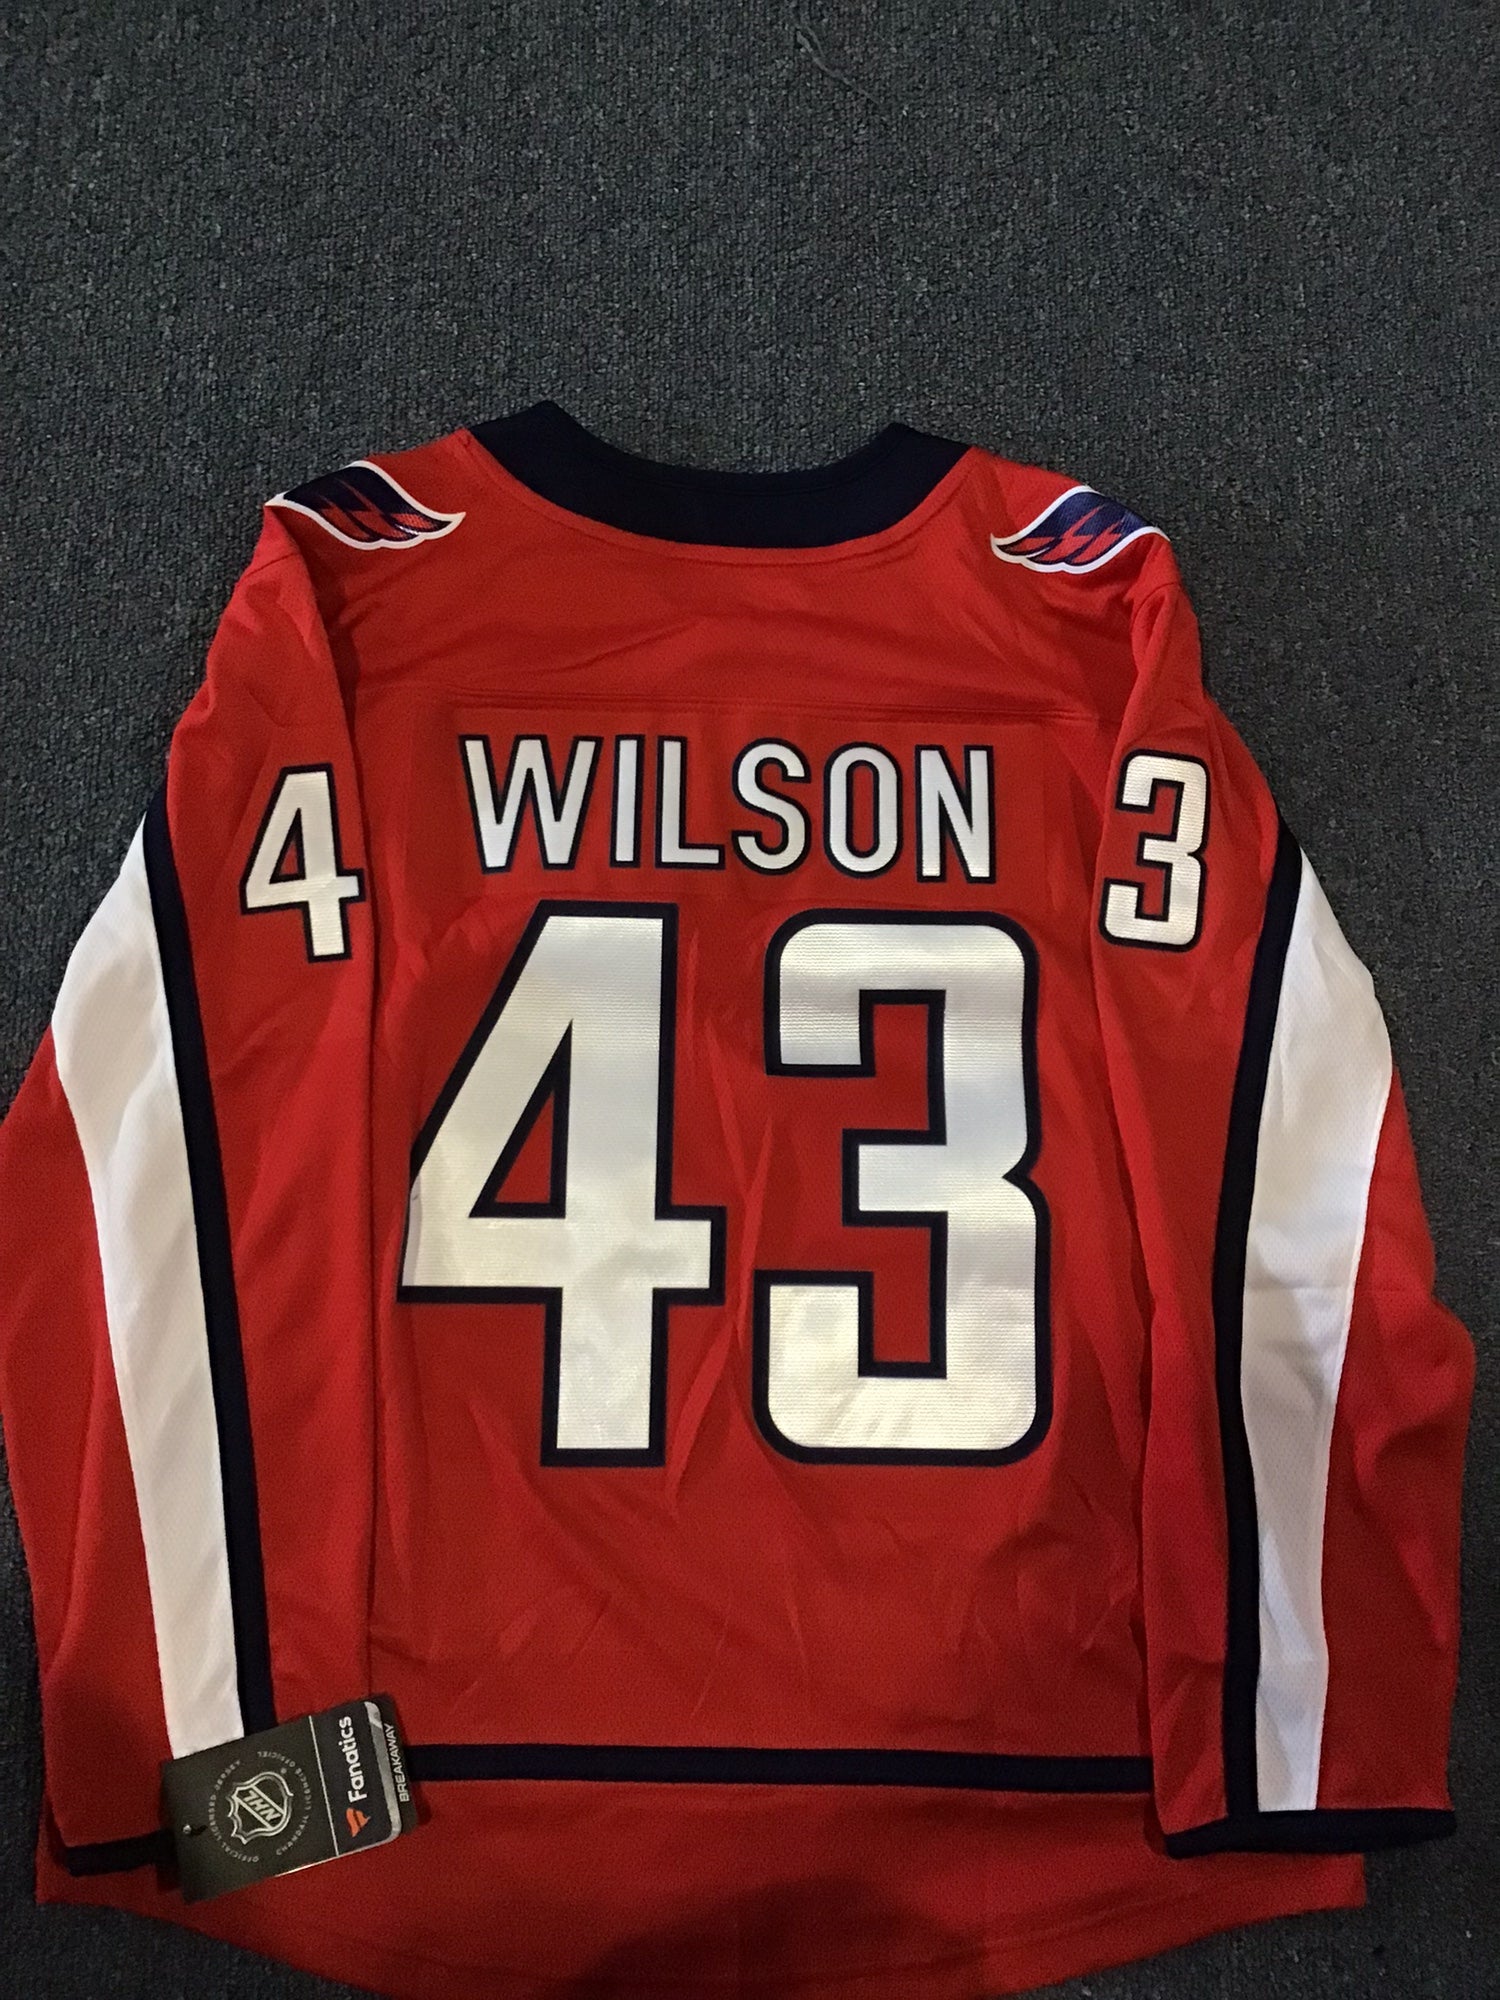 New With Tags Washington Capitals Men's XL Fanatics Jersey #43 Wilson